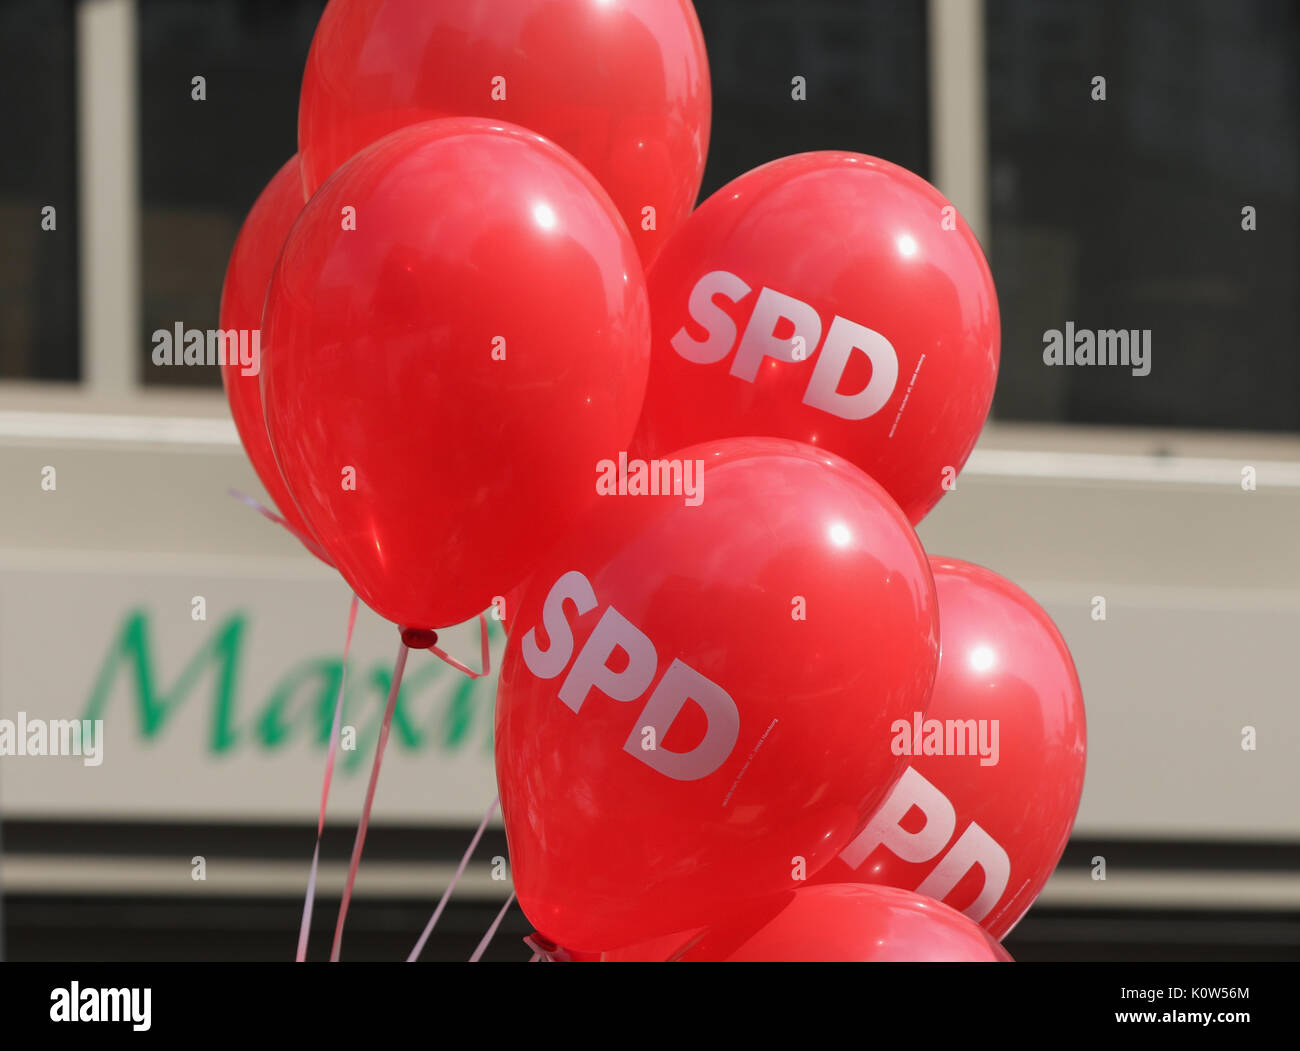 Essen, Germania. 24 Ago, 2017. Palloncini rossi dei socialdemocratici durante una campagna di rally. Credito: Juergen schwarz/Alamy Live News Foto Stock